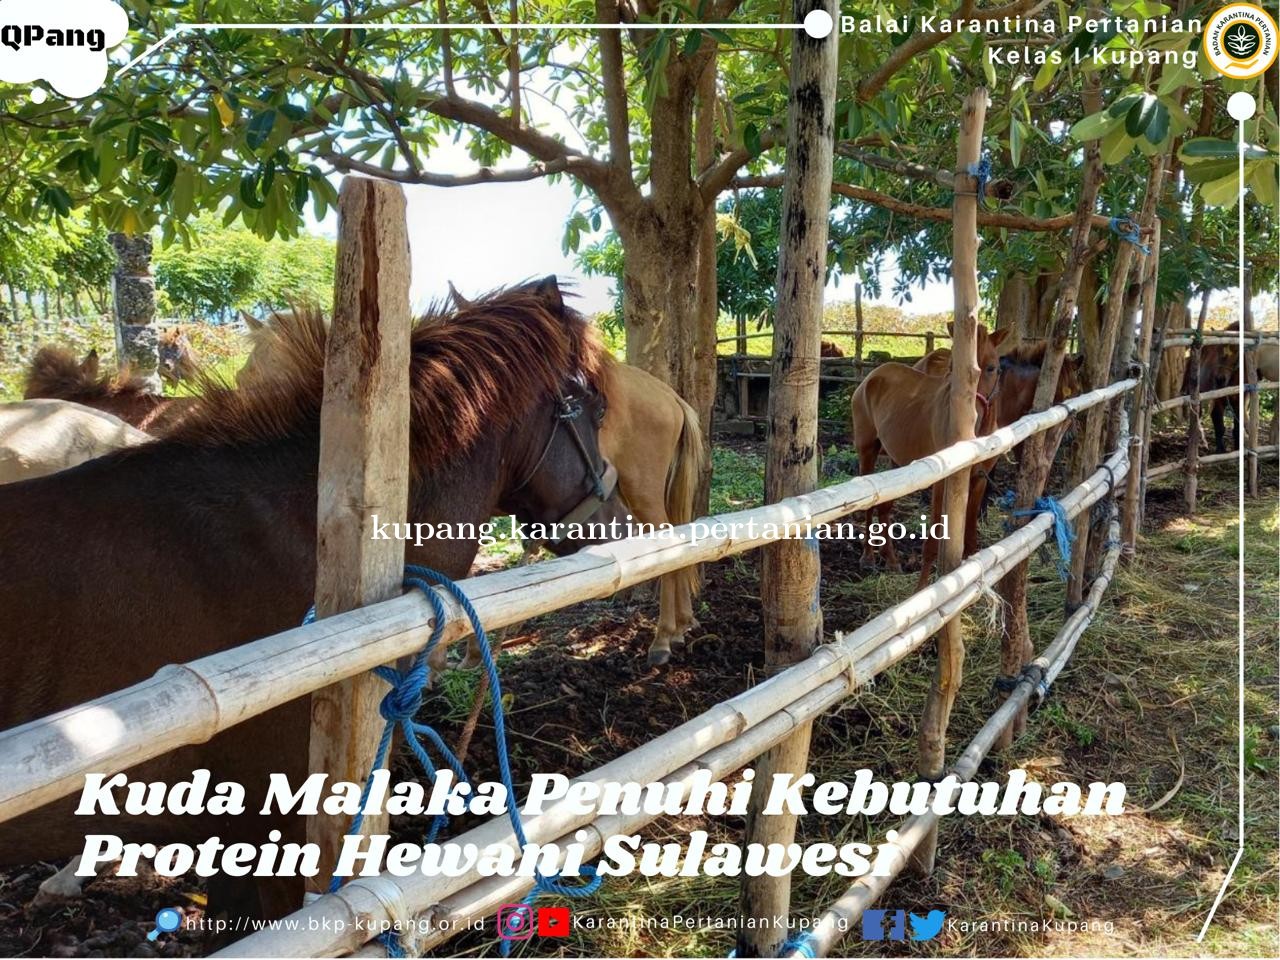 Kuda Malaka NTT, Penuhi Kebutuhan Protein Hewani Sulawesi